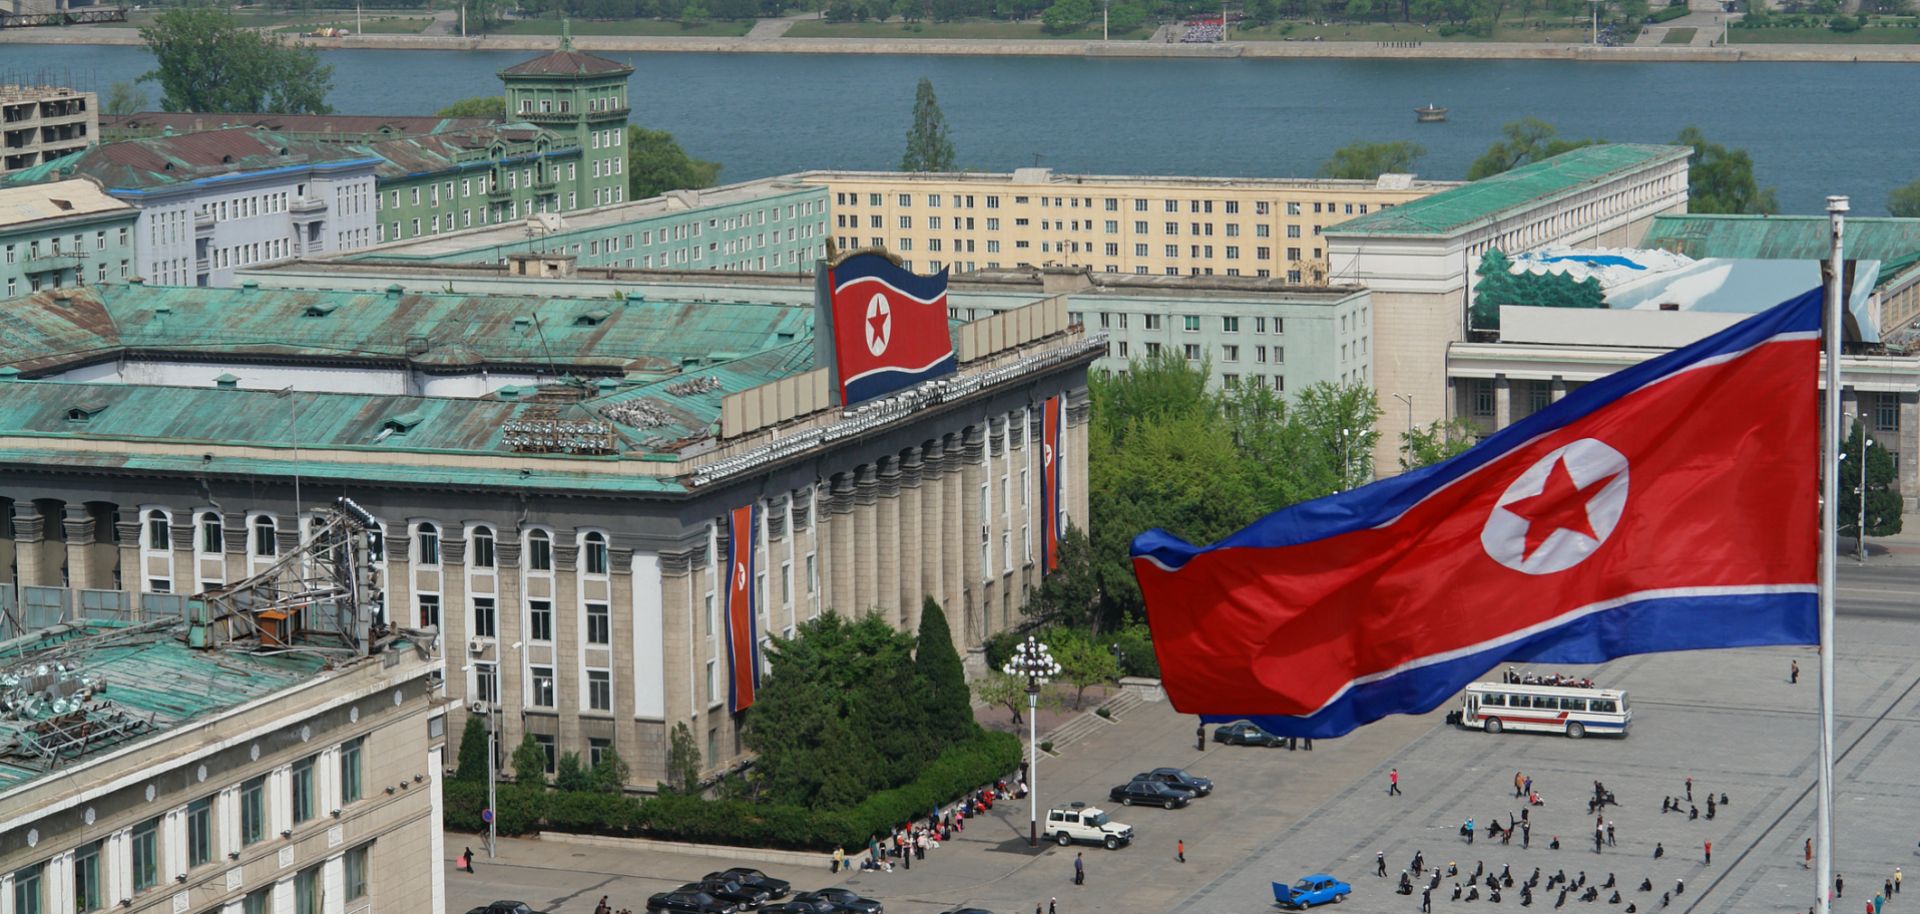 Kim Il Sung Square in Pyongyang, North Korea.